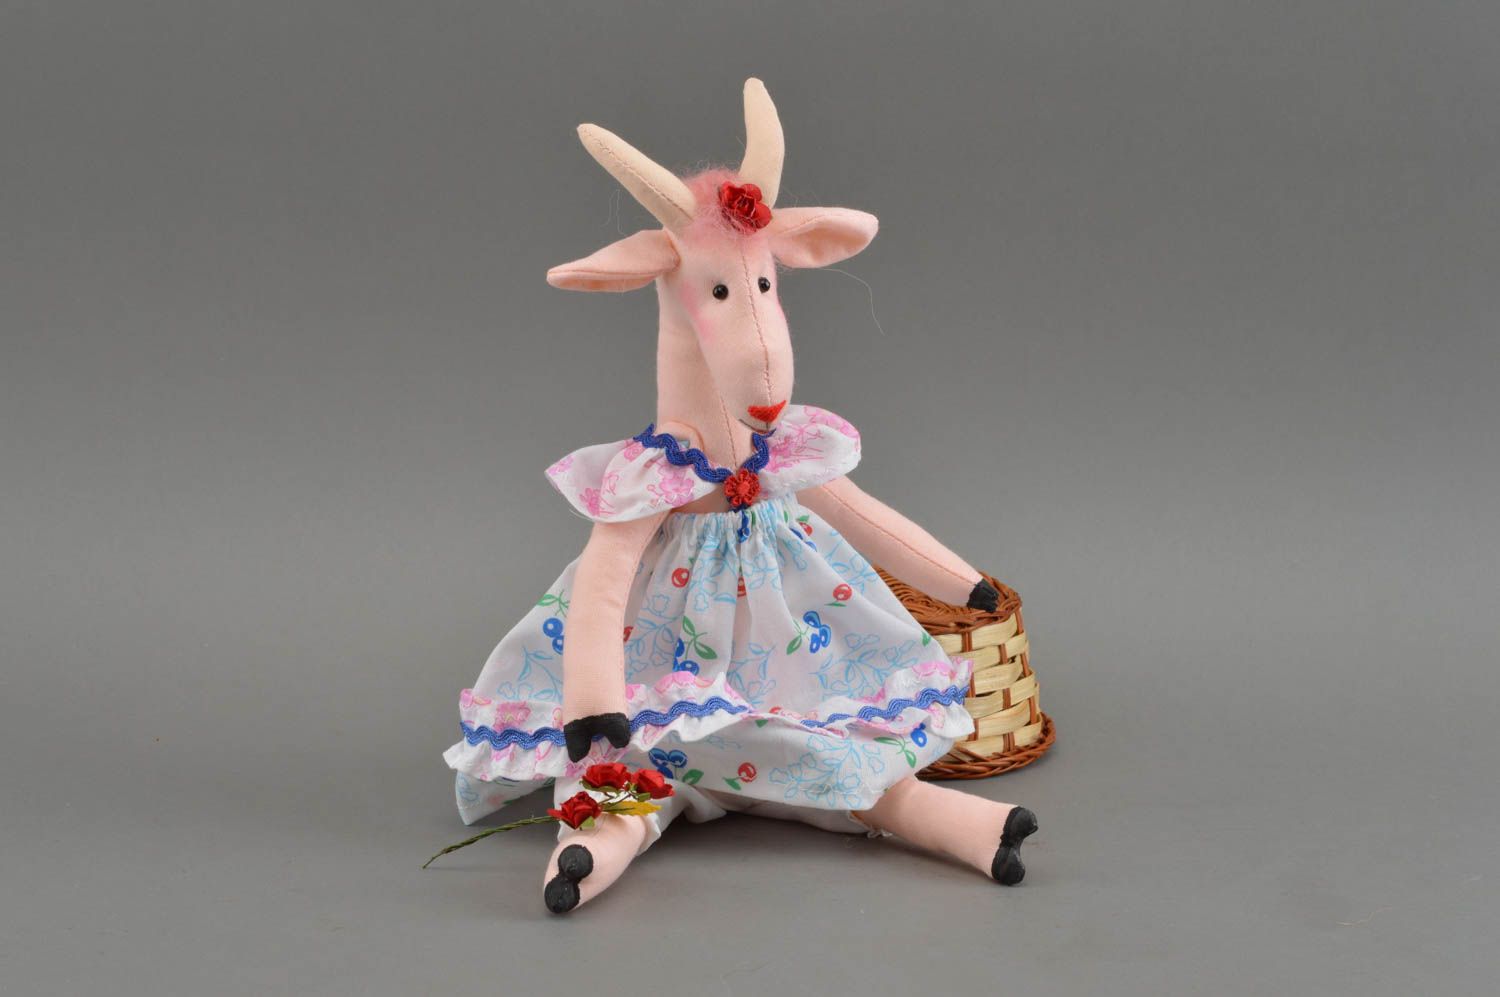 Оригинальная мягкая игрушка в виде козы в платье из ситца розовая ручная работа фото 1